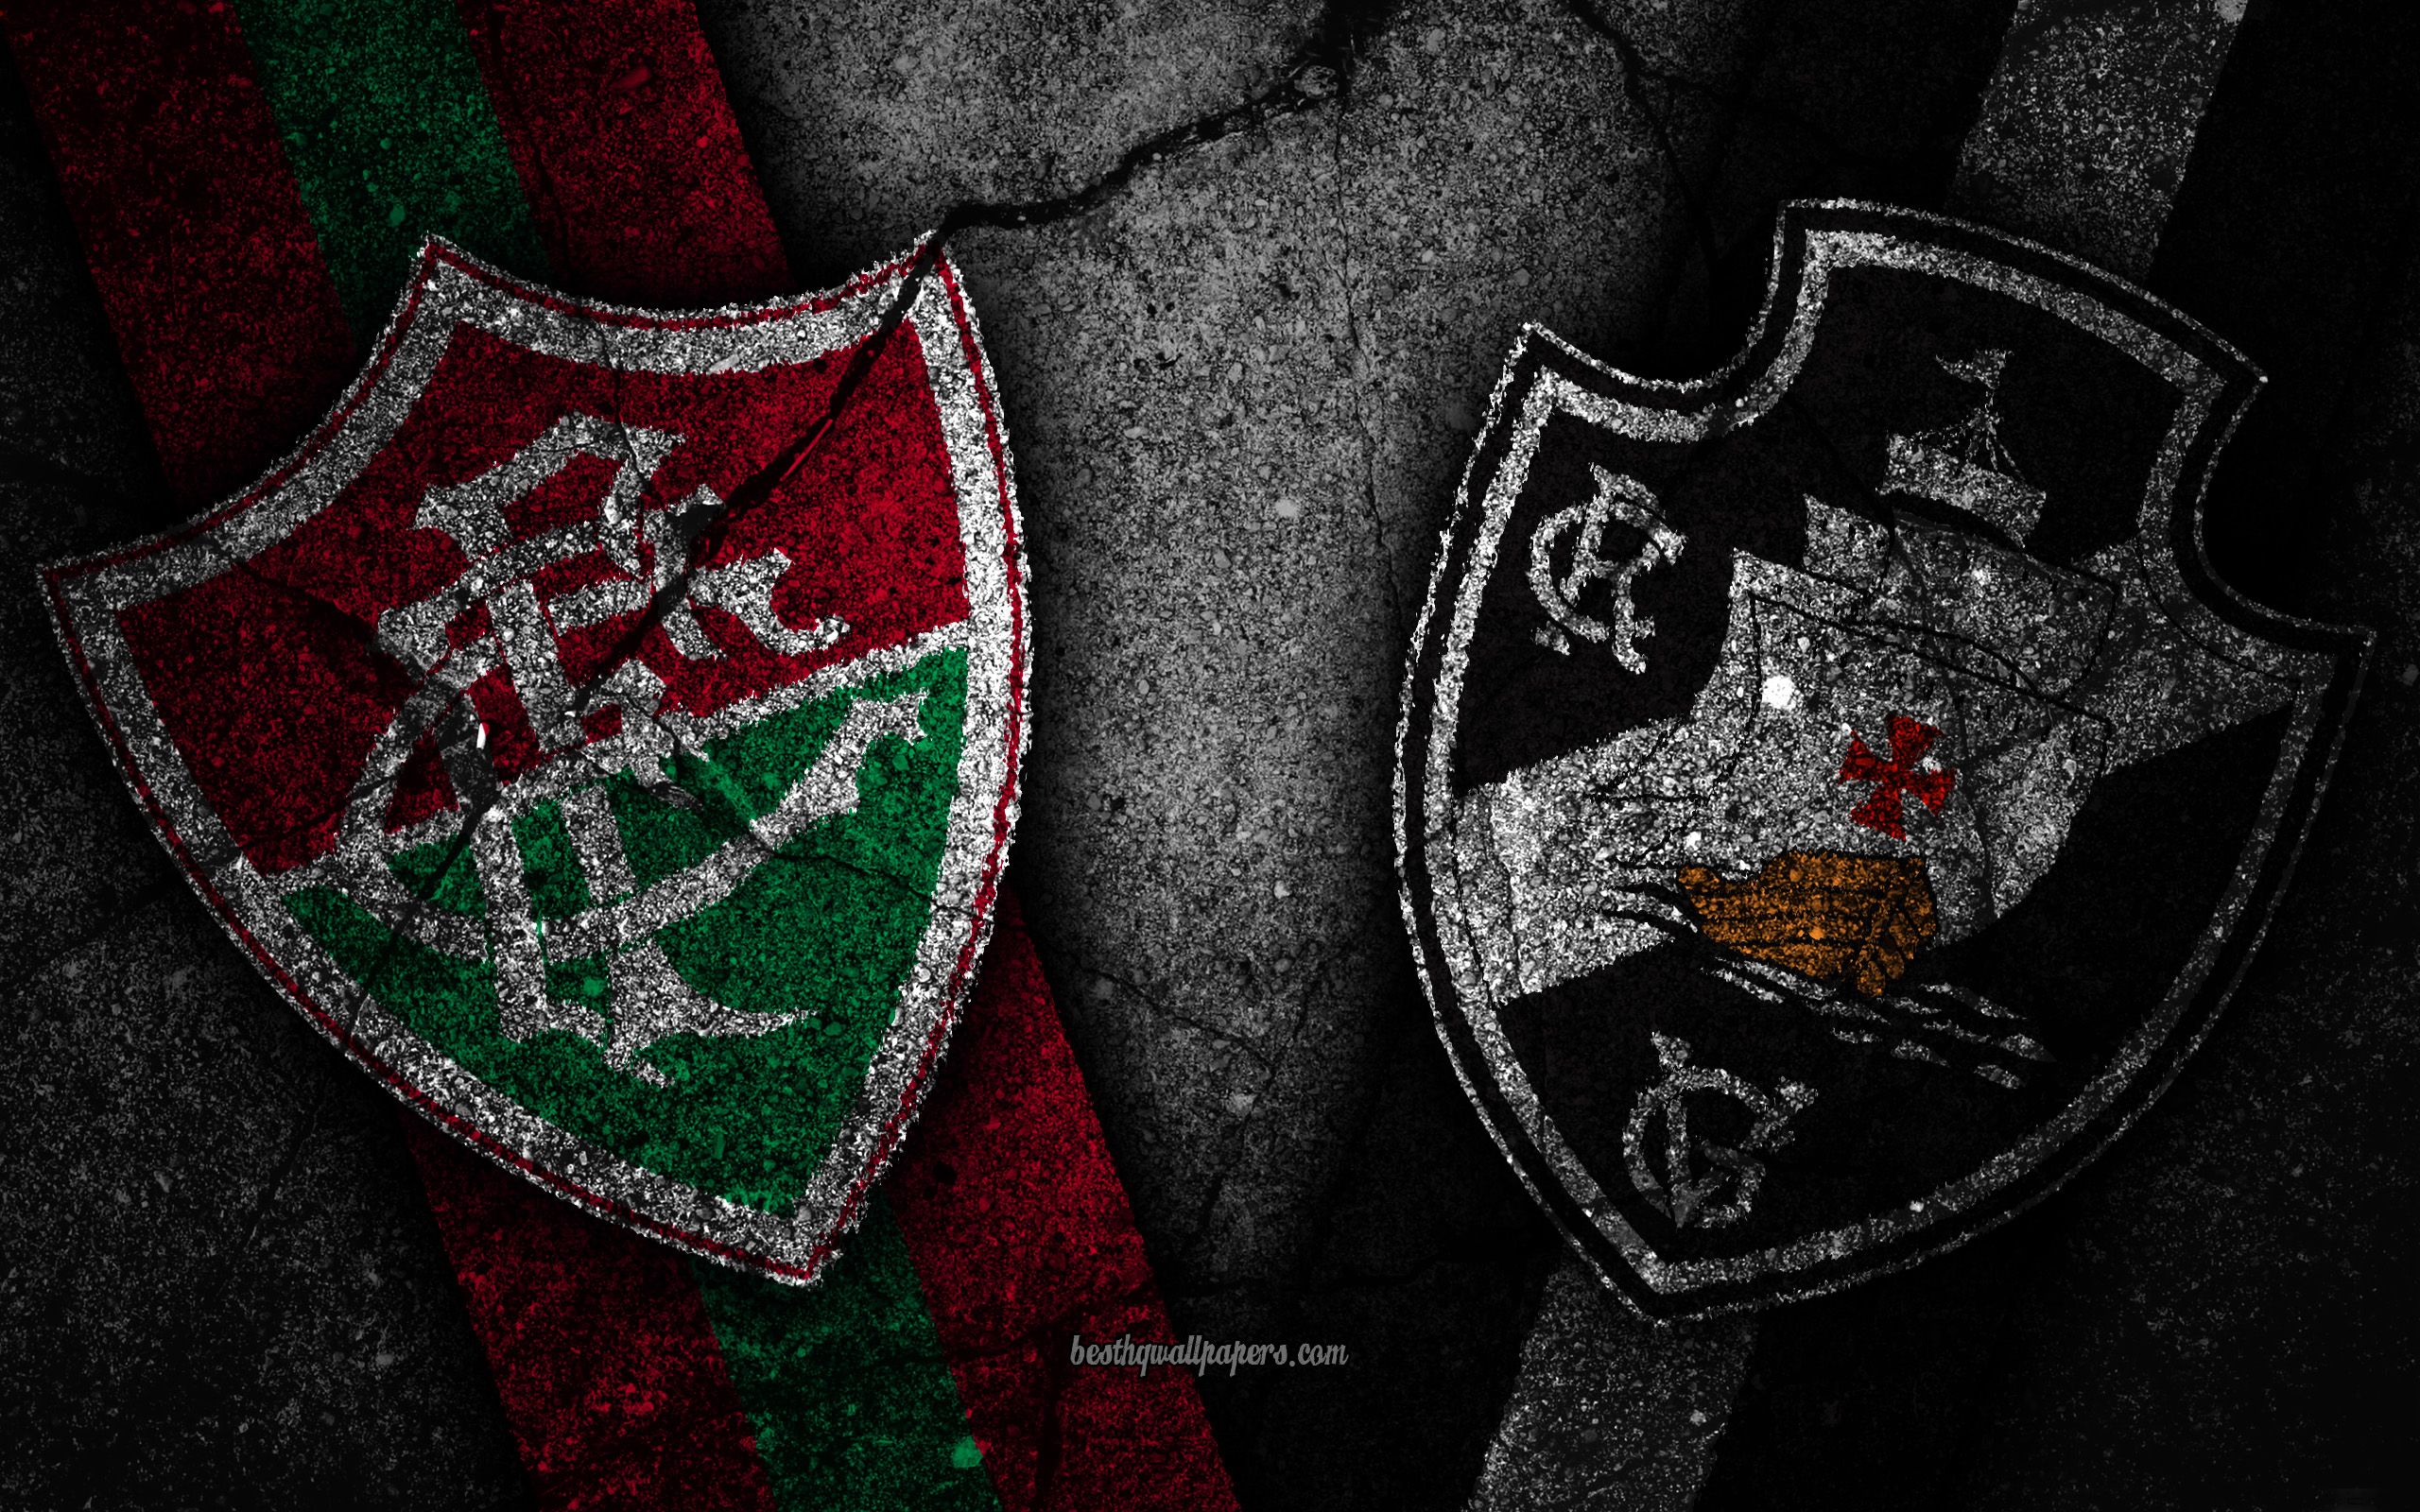 Download wallpaper Fluminense vs Vasco da Gama, Round Serie A